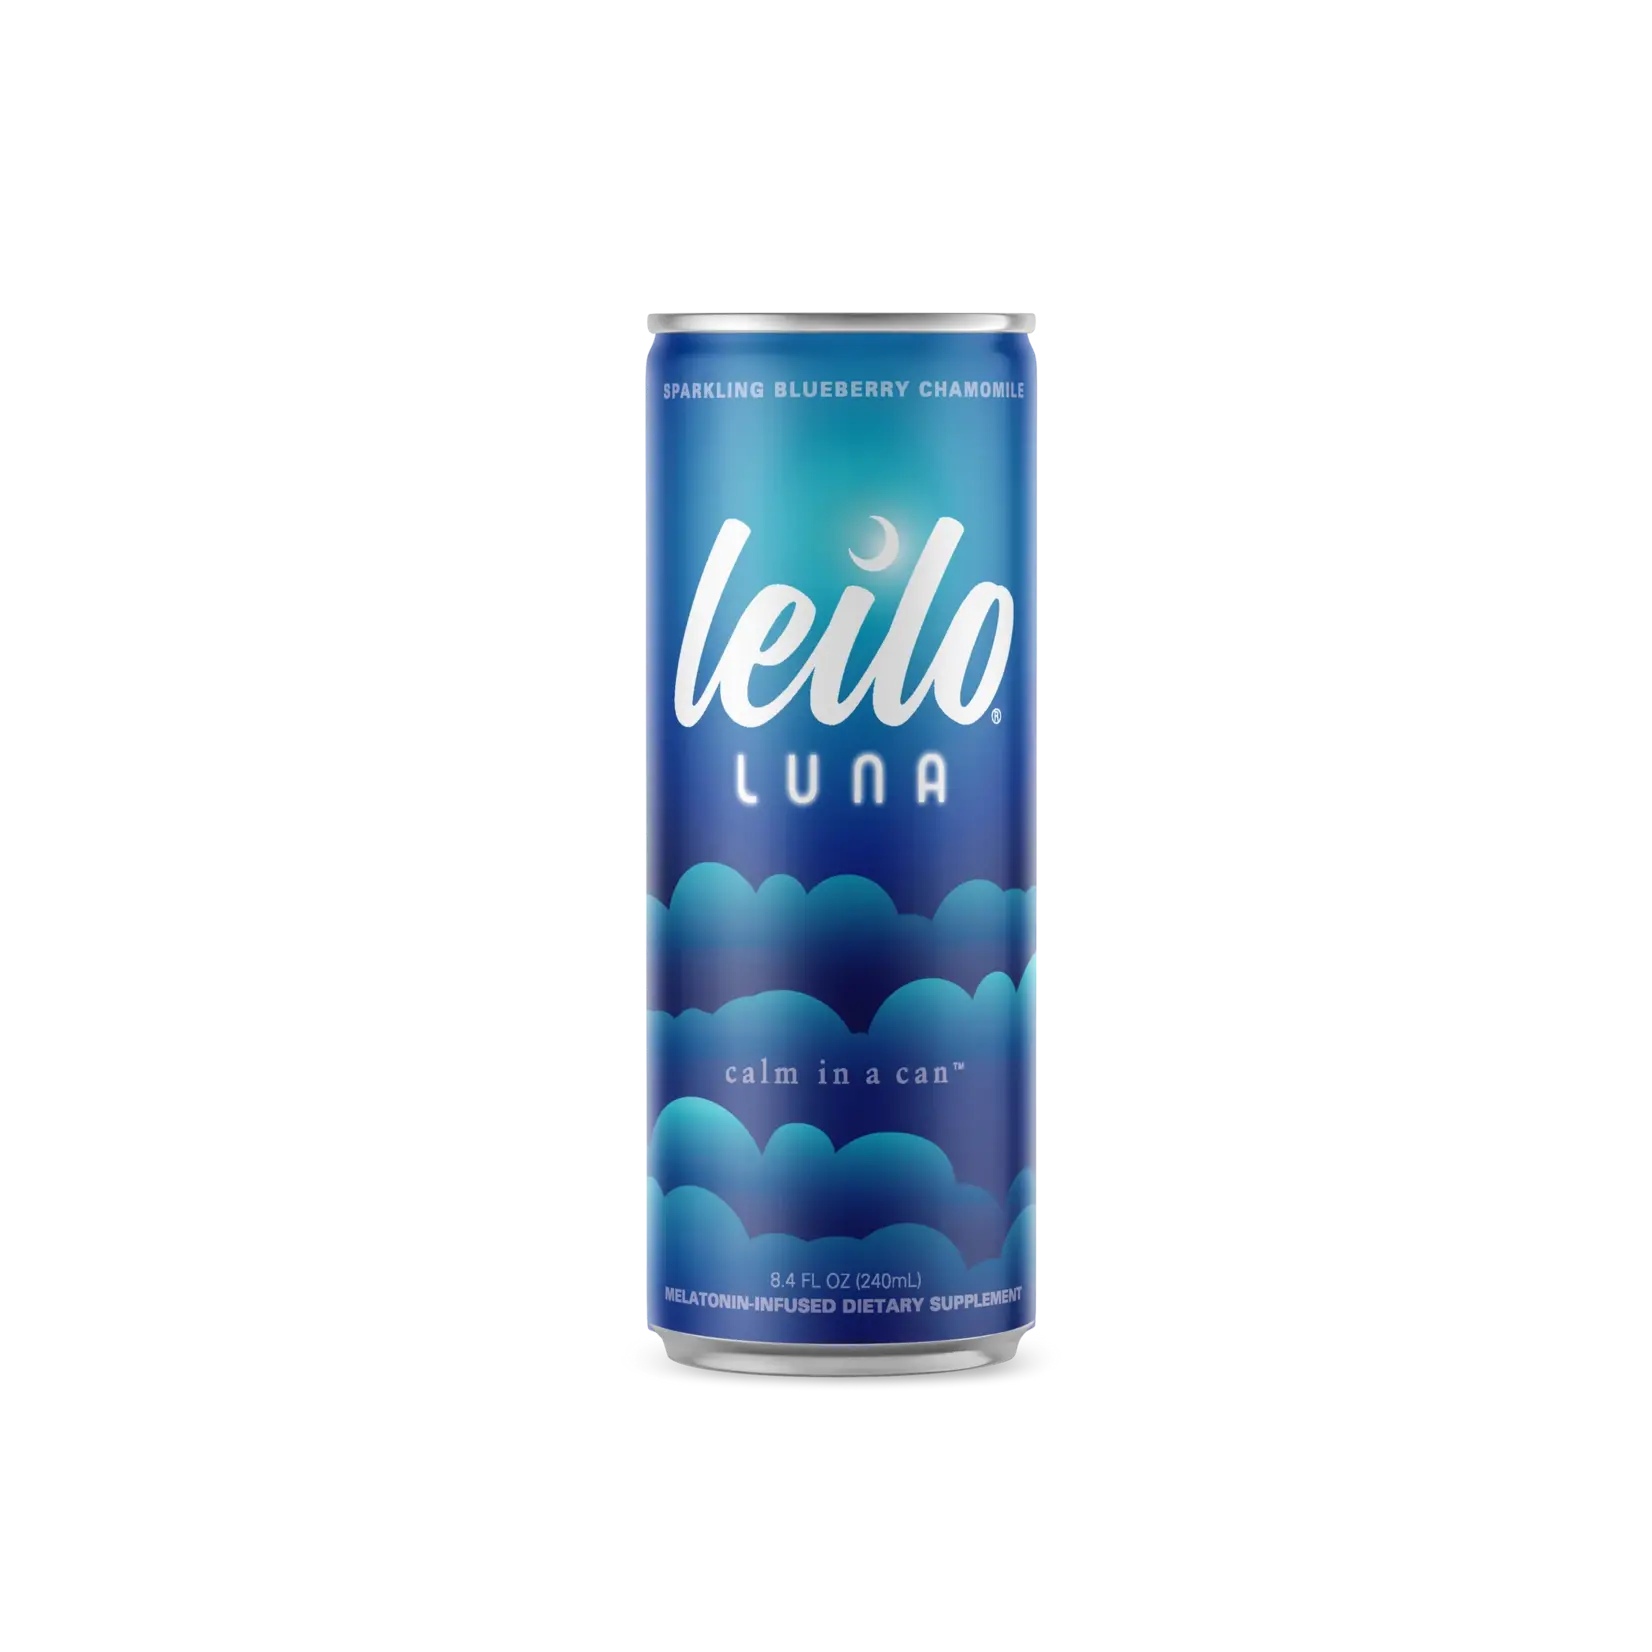 Leilo Leilo Luna Sleep-Aid Blueberry Chamomile